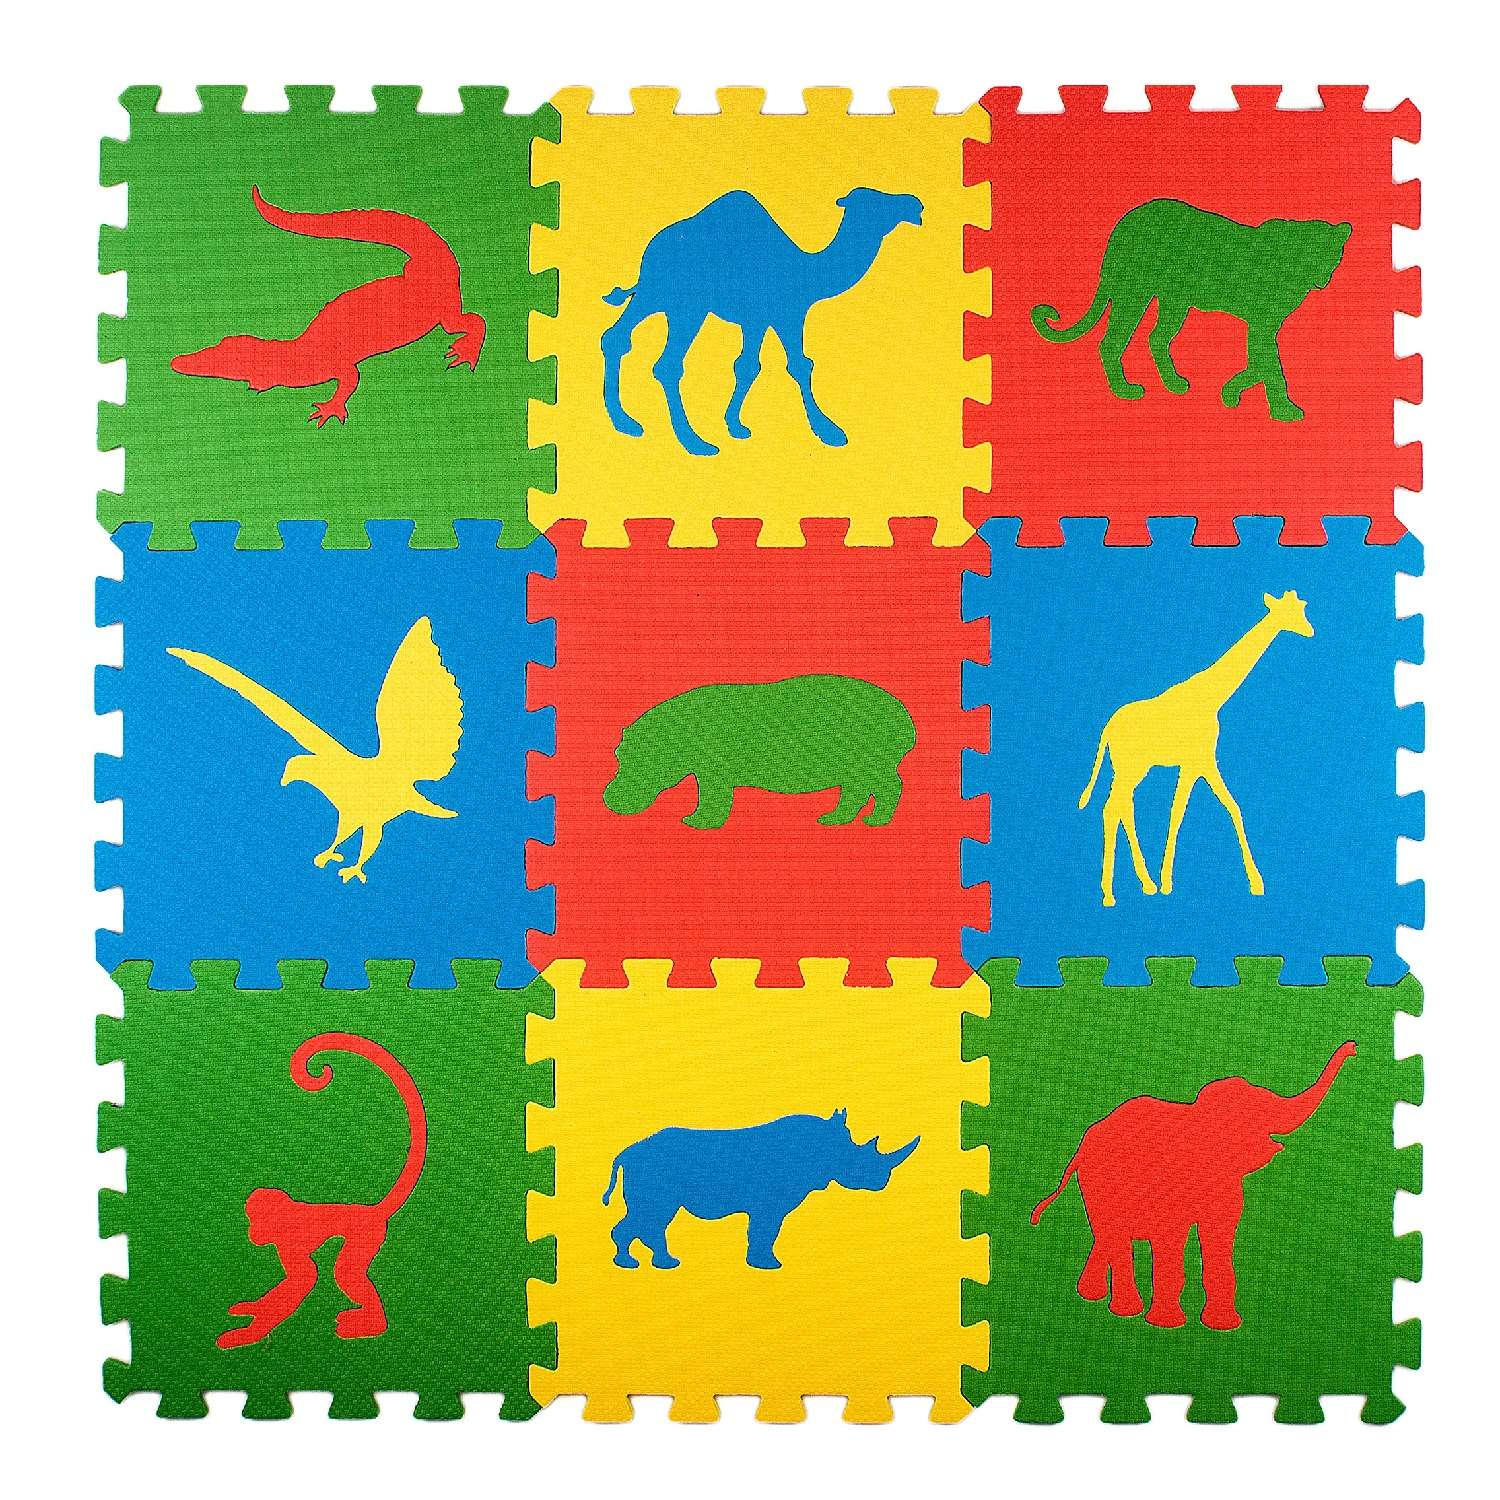 Развивающий детский коврик Eco cover игровой для ползания мягкий пол Сафари 33х33 - фото 1